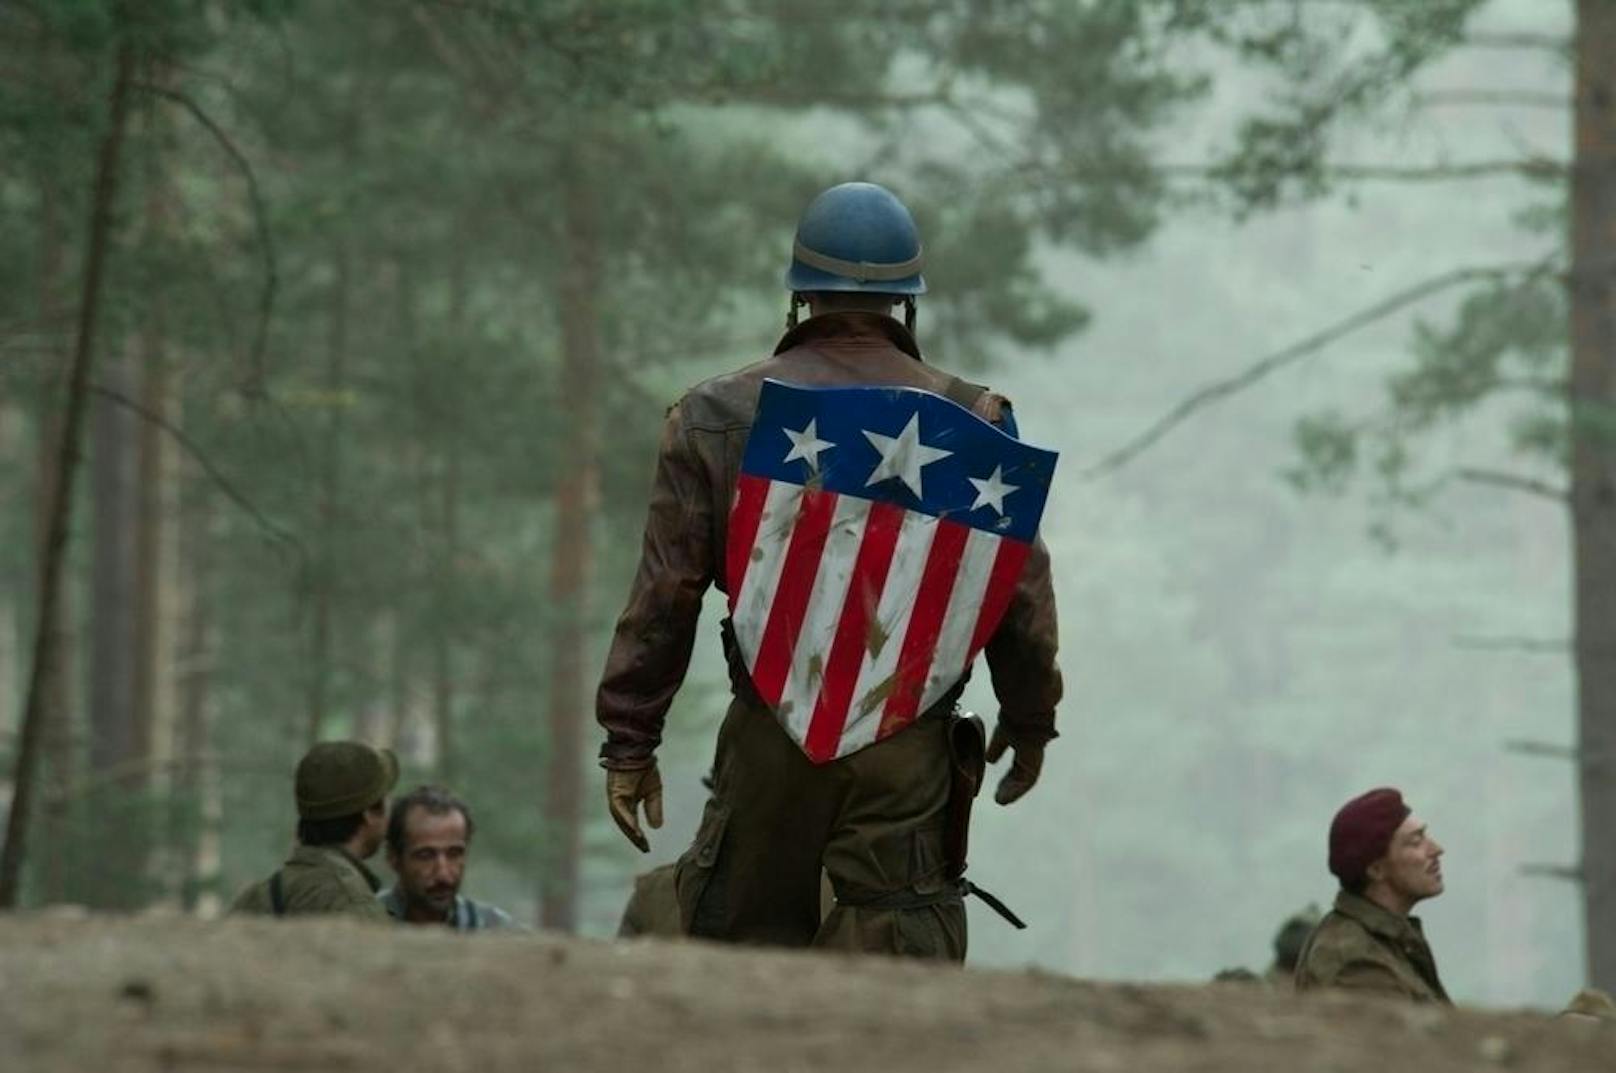 Chris Evans als Captain America